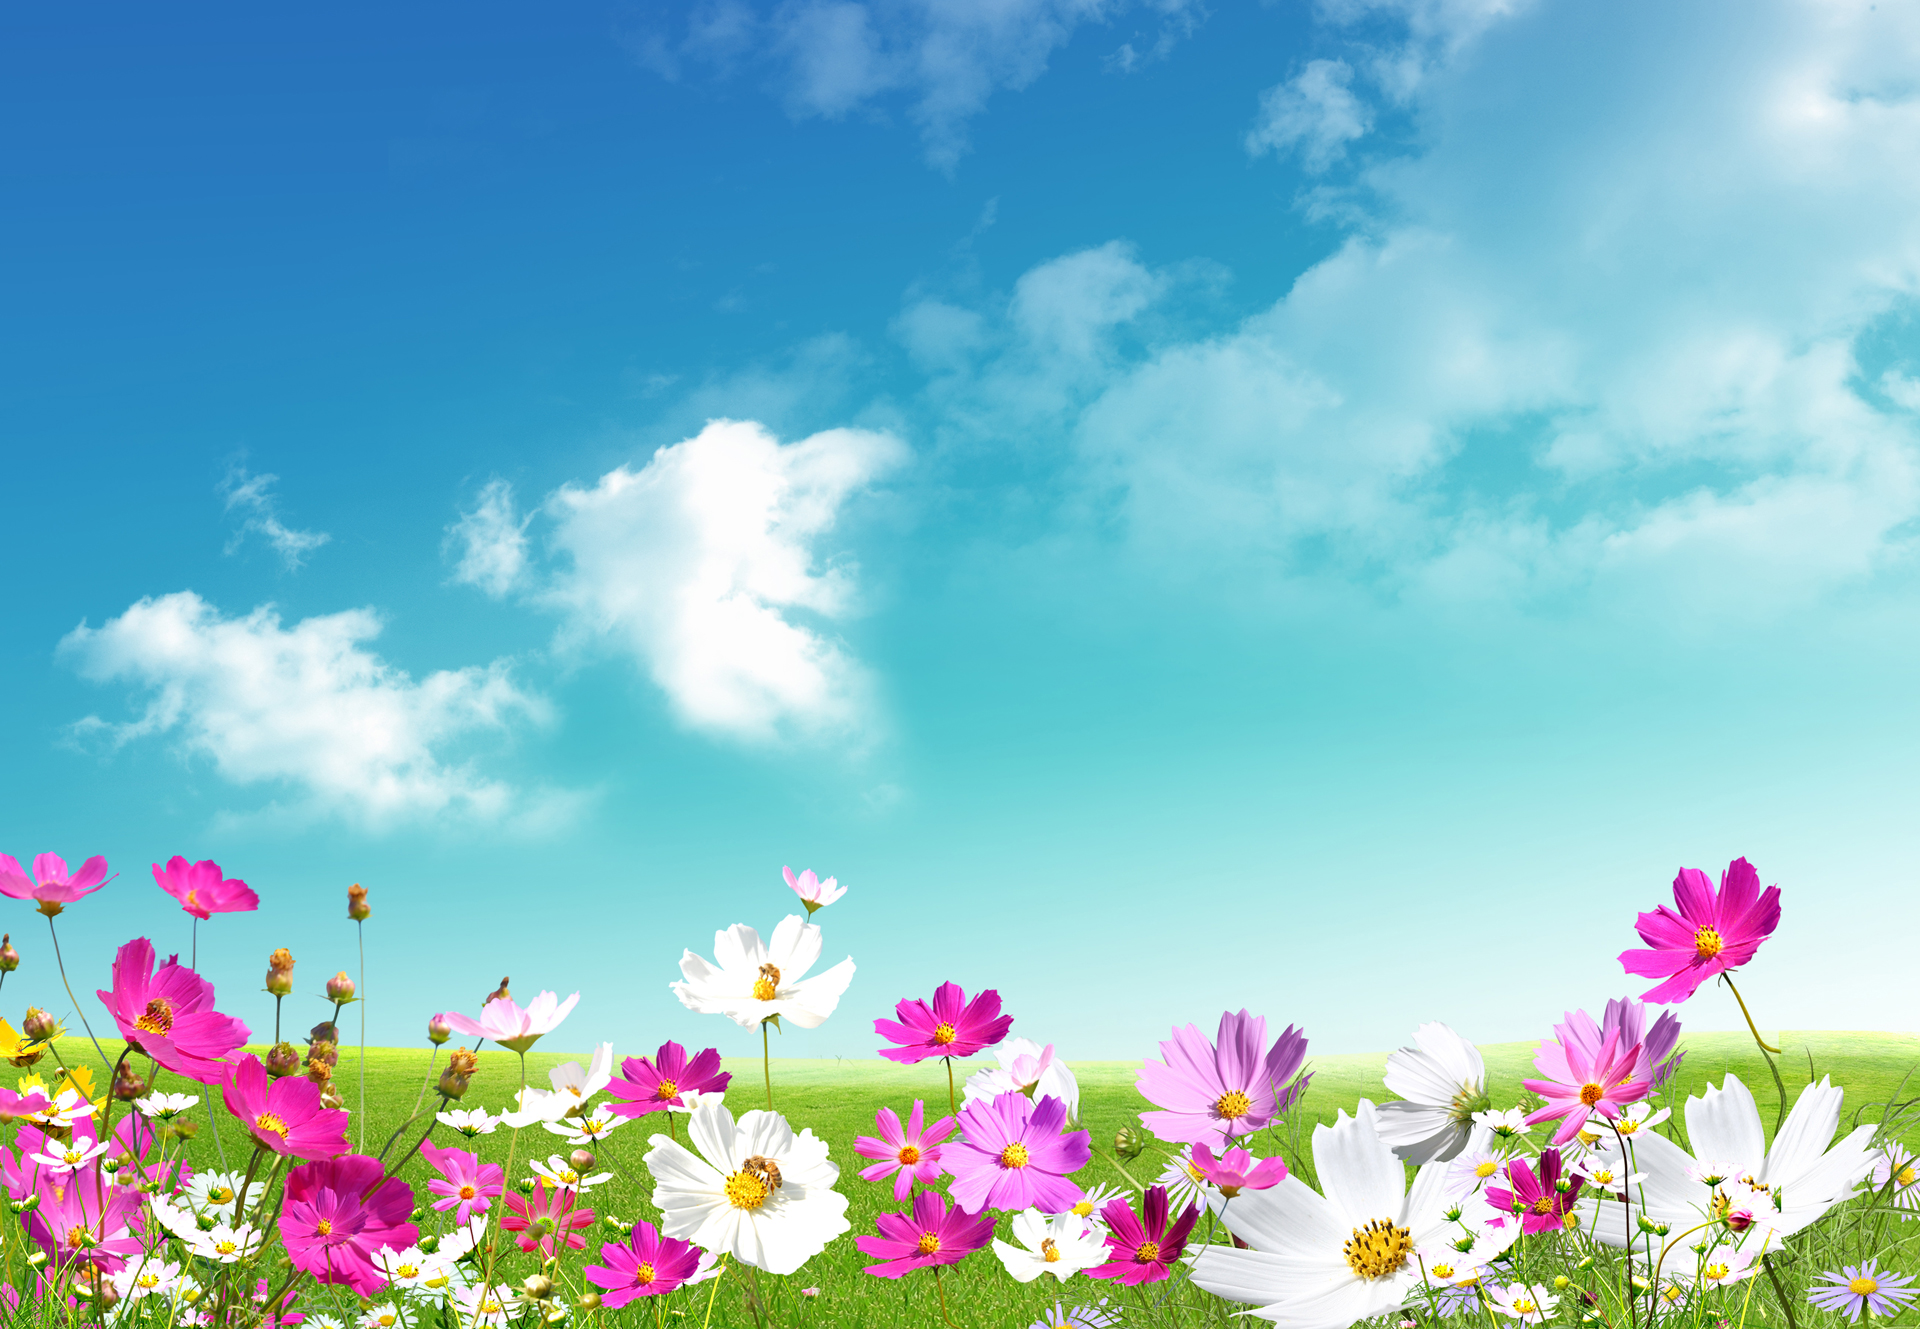 Hình nền Mùa Xuân miễn phí: Mùa xuân đến rồi! Bạn muốn thể hiện tình yêu với mùa xuân qua giao diện máy tính của mình? Bộ sưu tập hình nền mùa xuân miễn phí sẽ mang đến cho bạn những bức tranh đầy màu sắc và tươi mới. Hãy cùng tận hưởng và trải nghiệm tình yêu của bạn với mùa xuân.